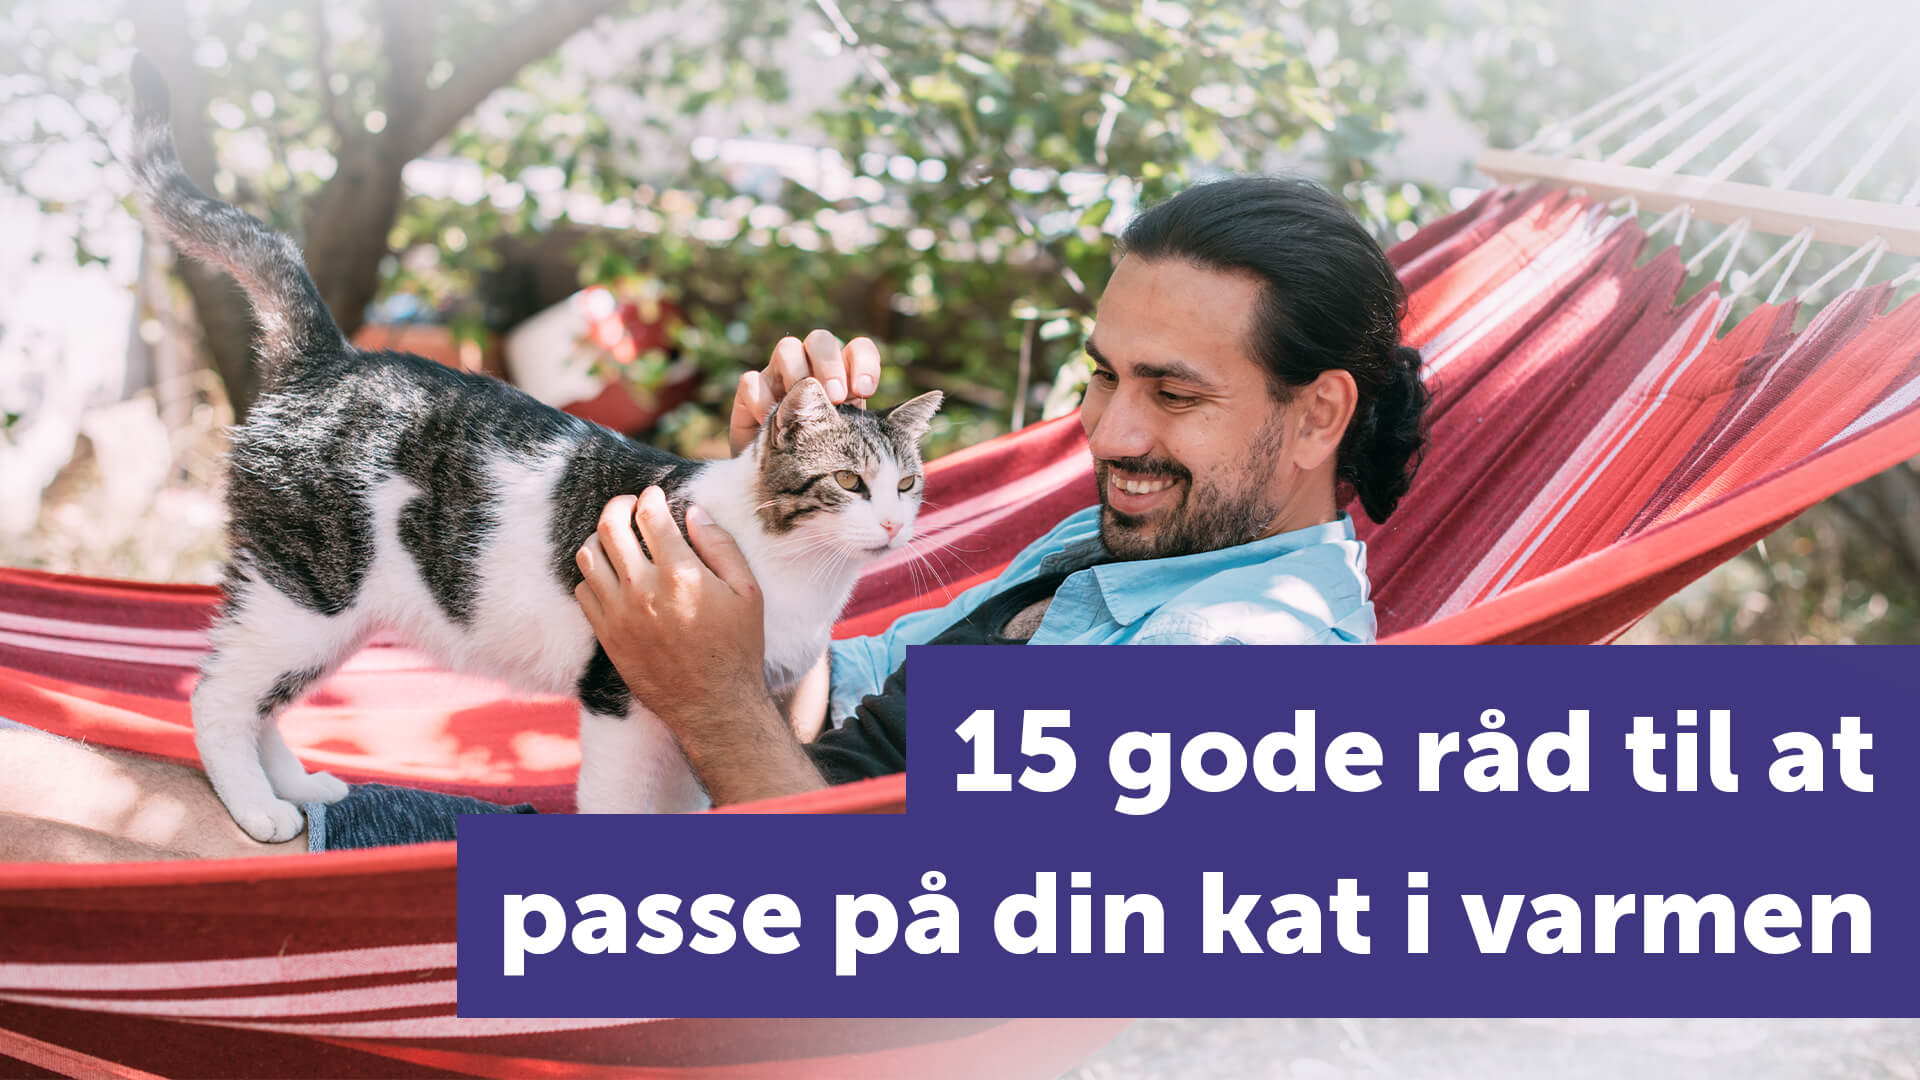 omvendt Svig Devise 15 gode råd til at passe på din kat i varmen